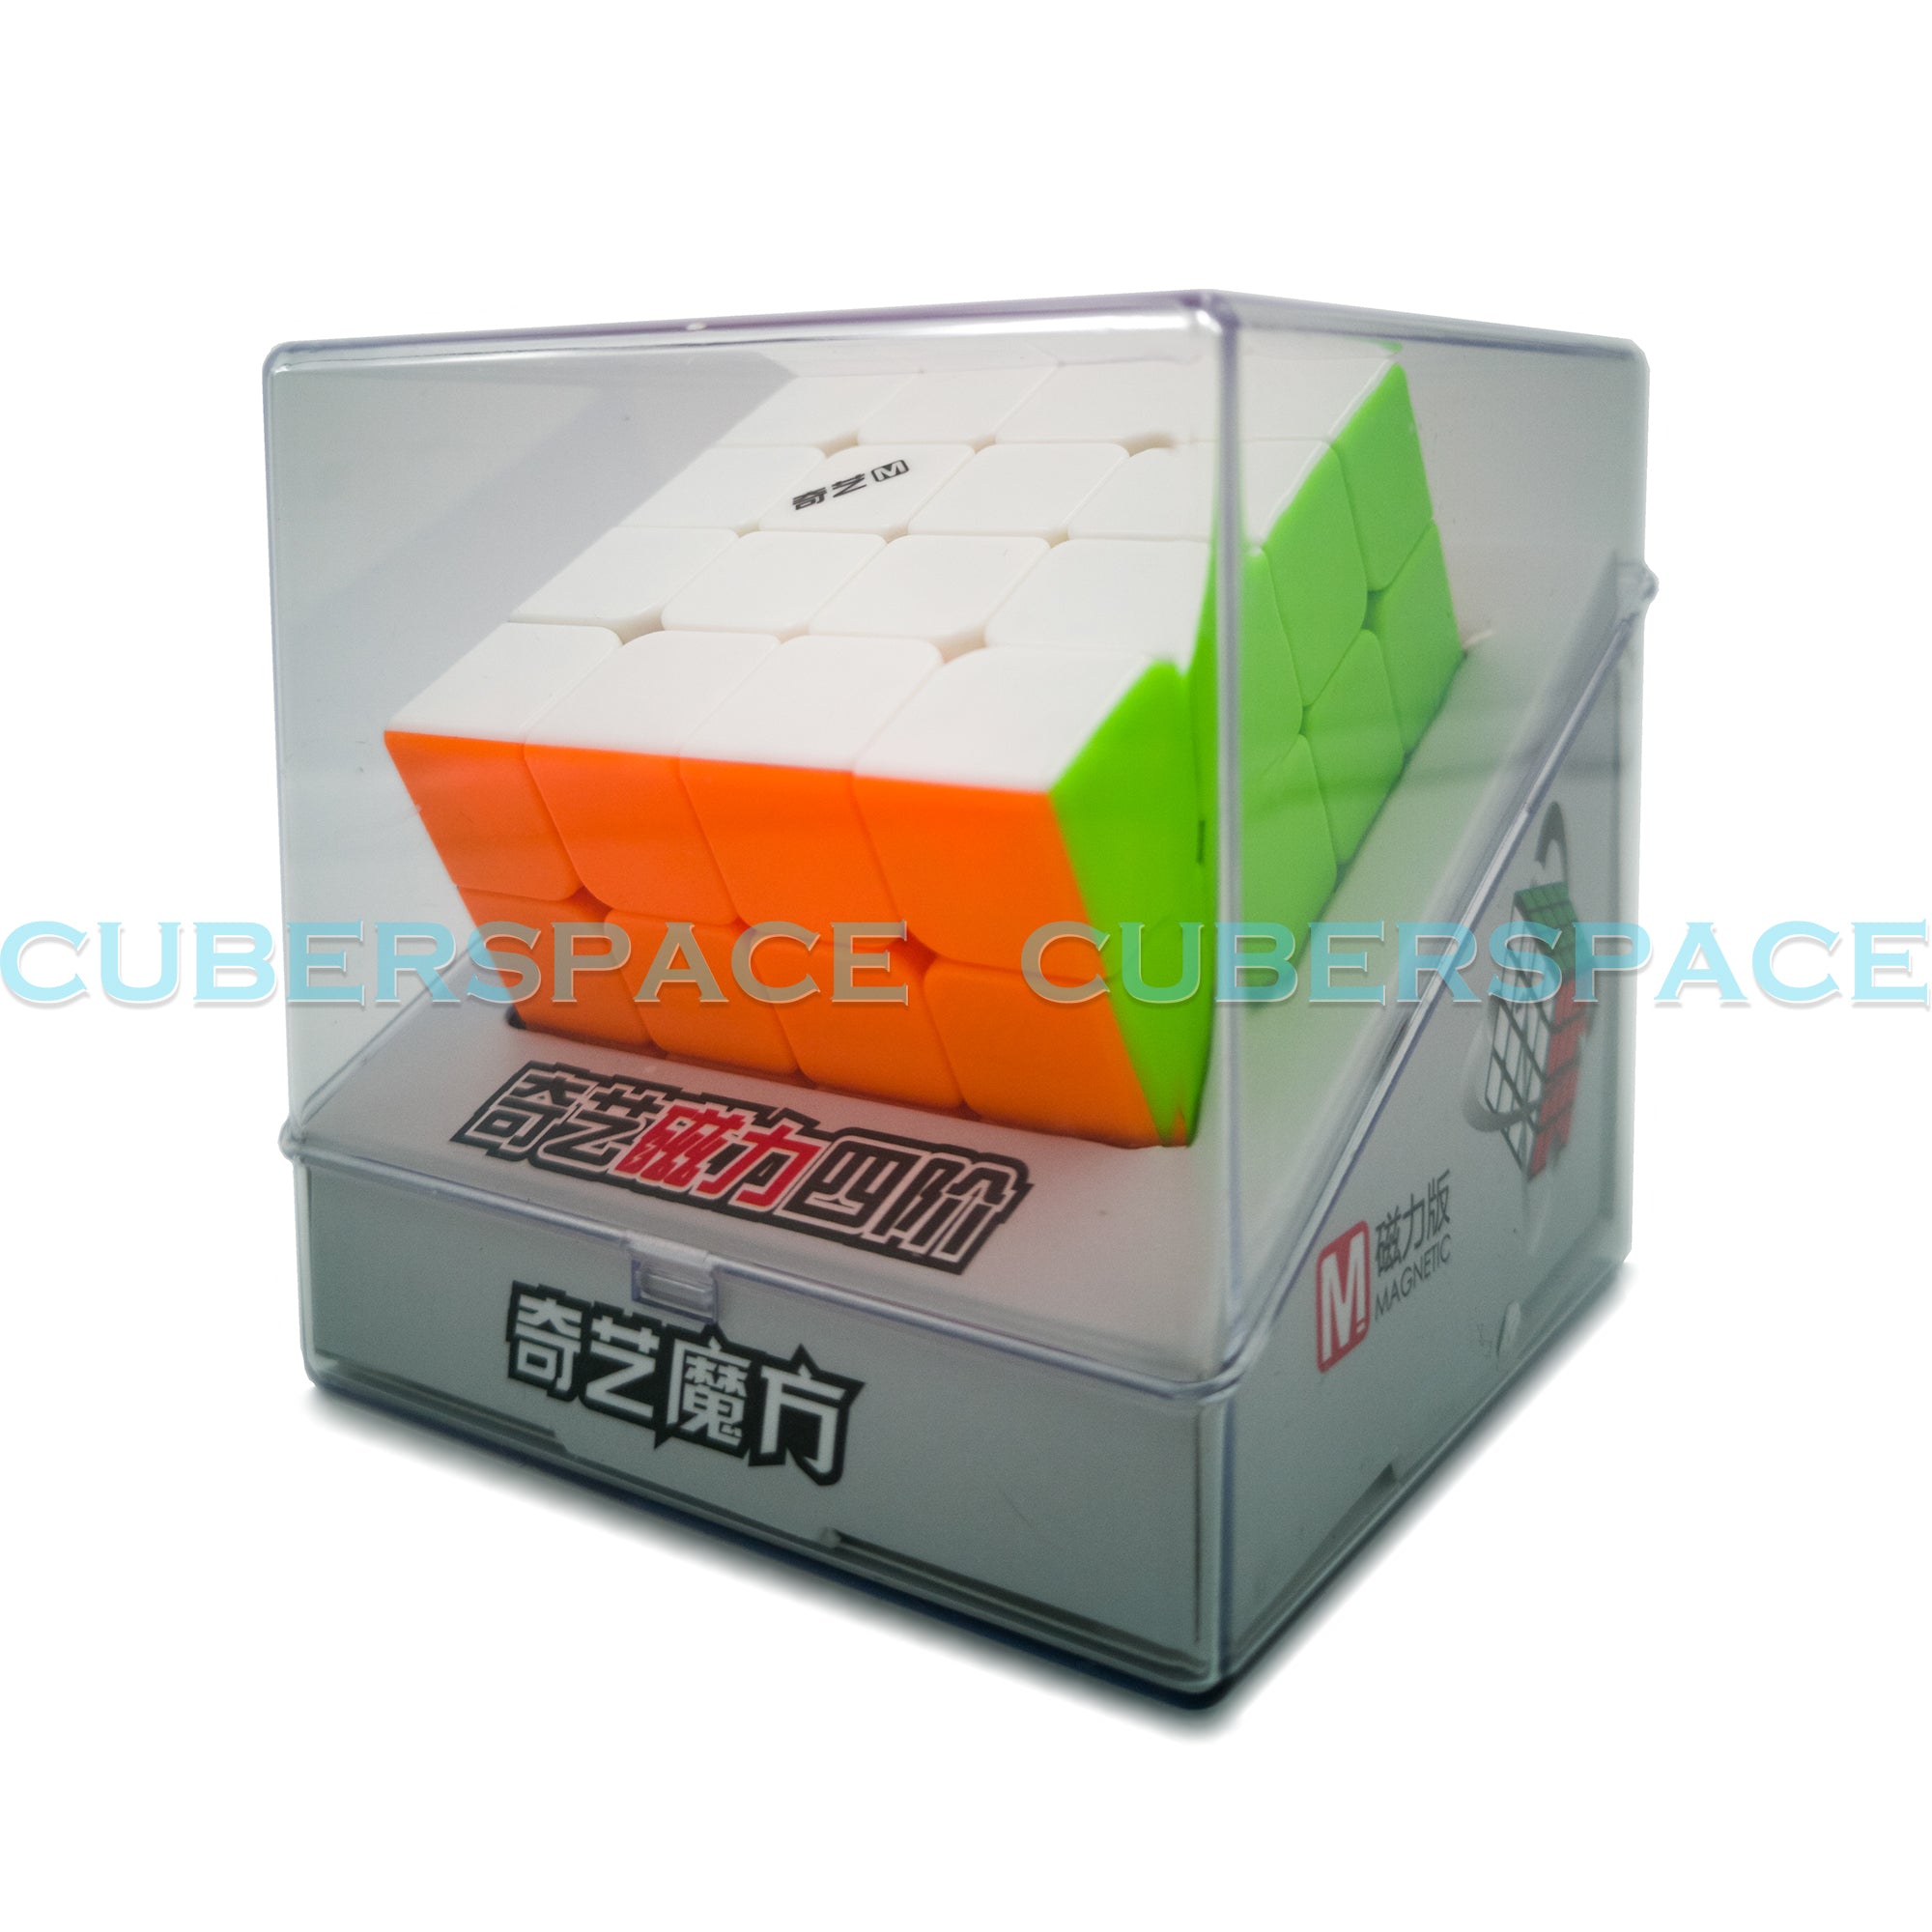 Rubik's Cube 3x3 QiYi MS Magnétique